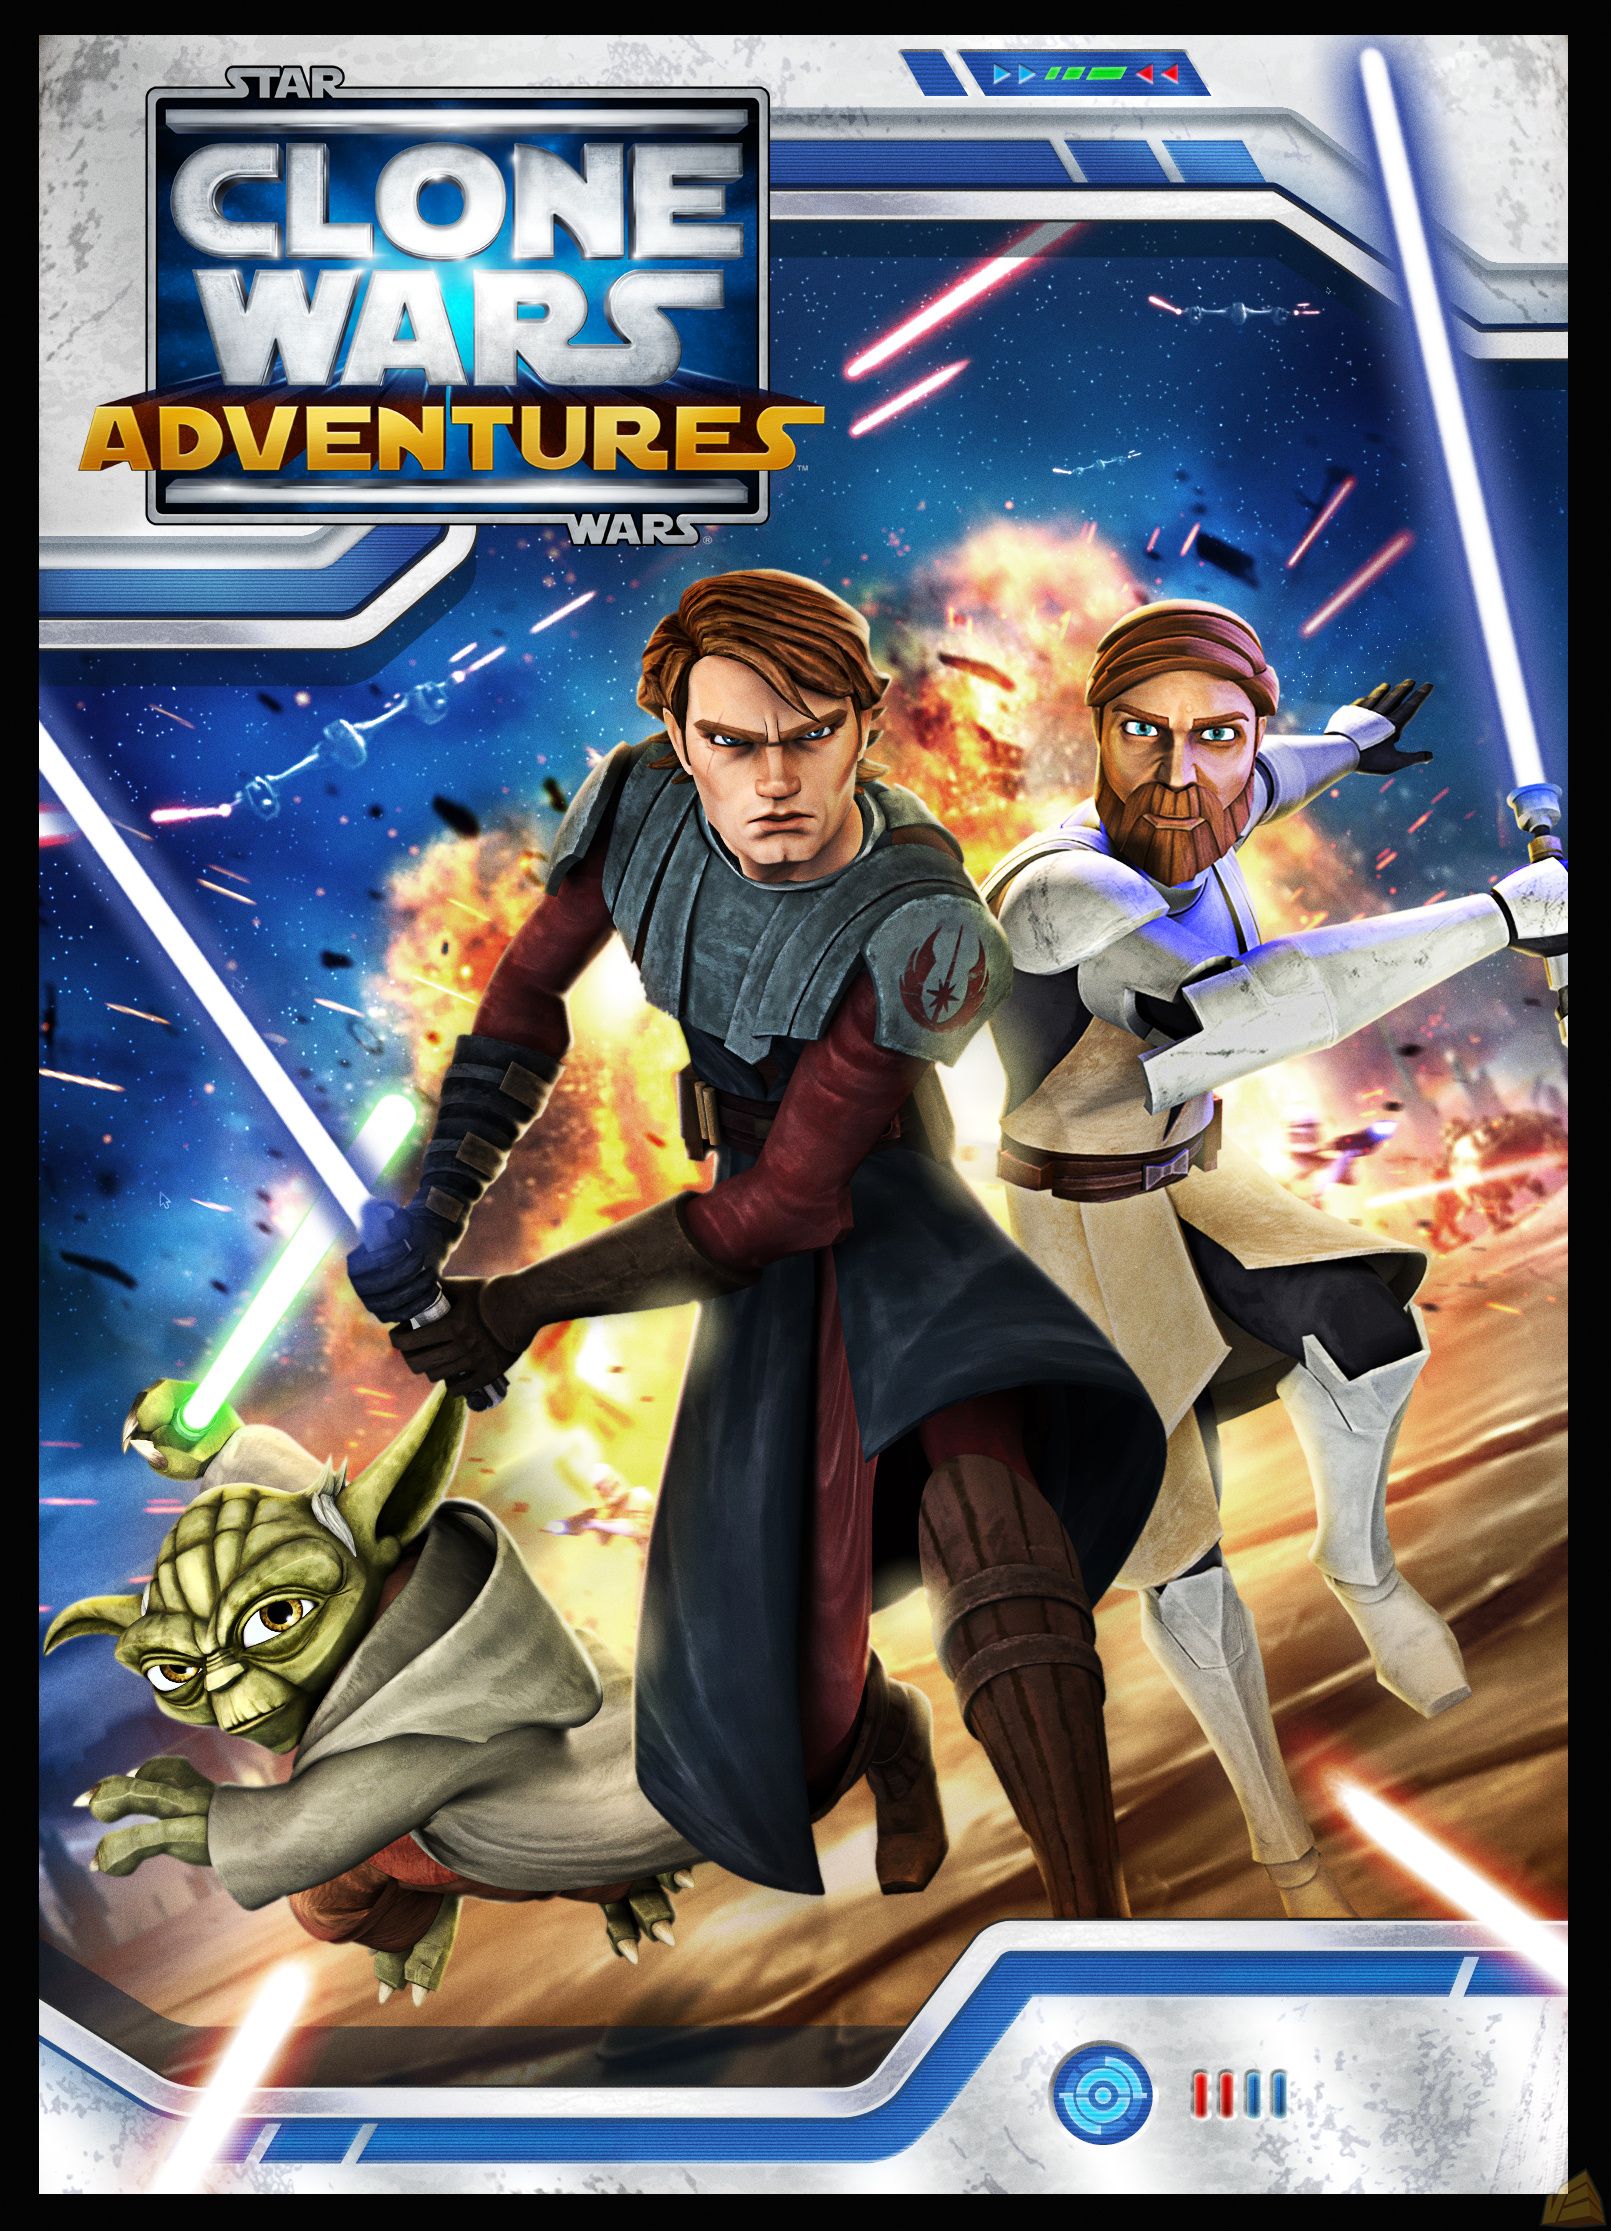 Star Wars Clone Wars Adventures Video Game Wookieepedia